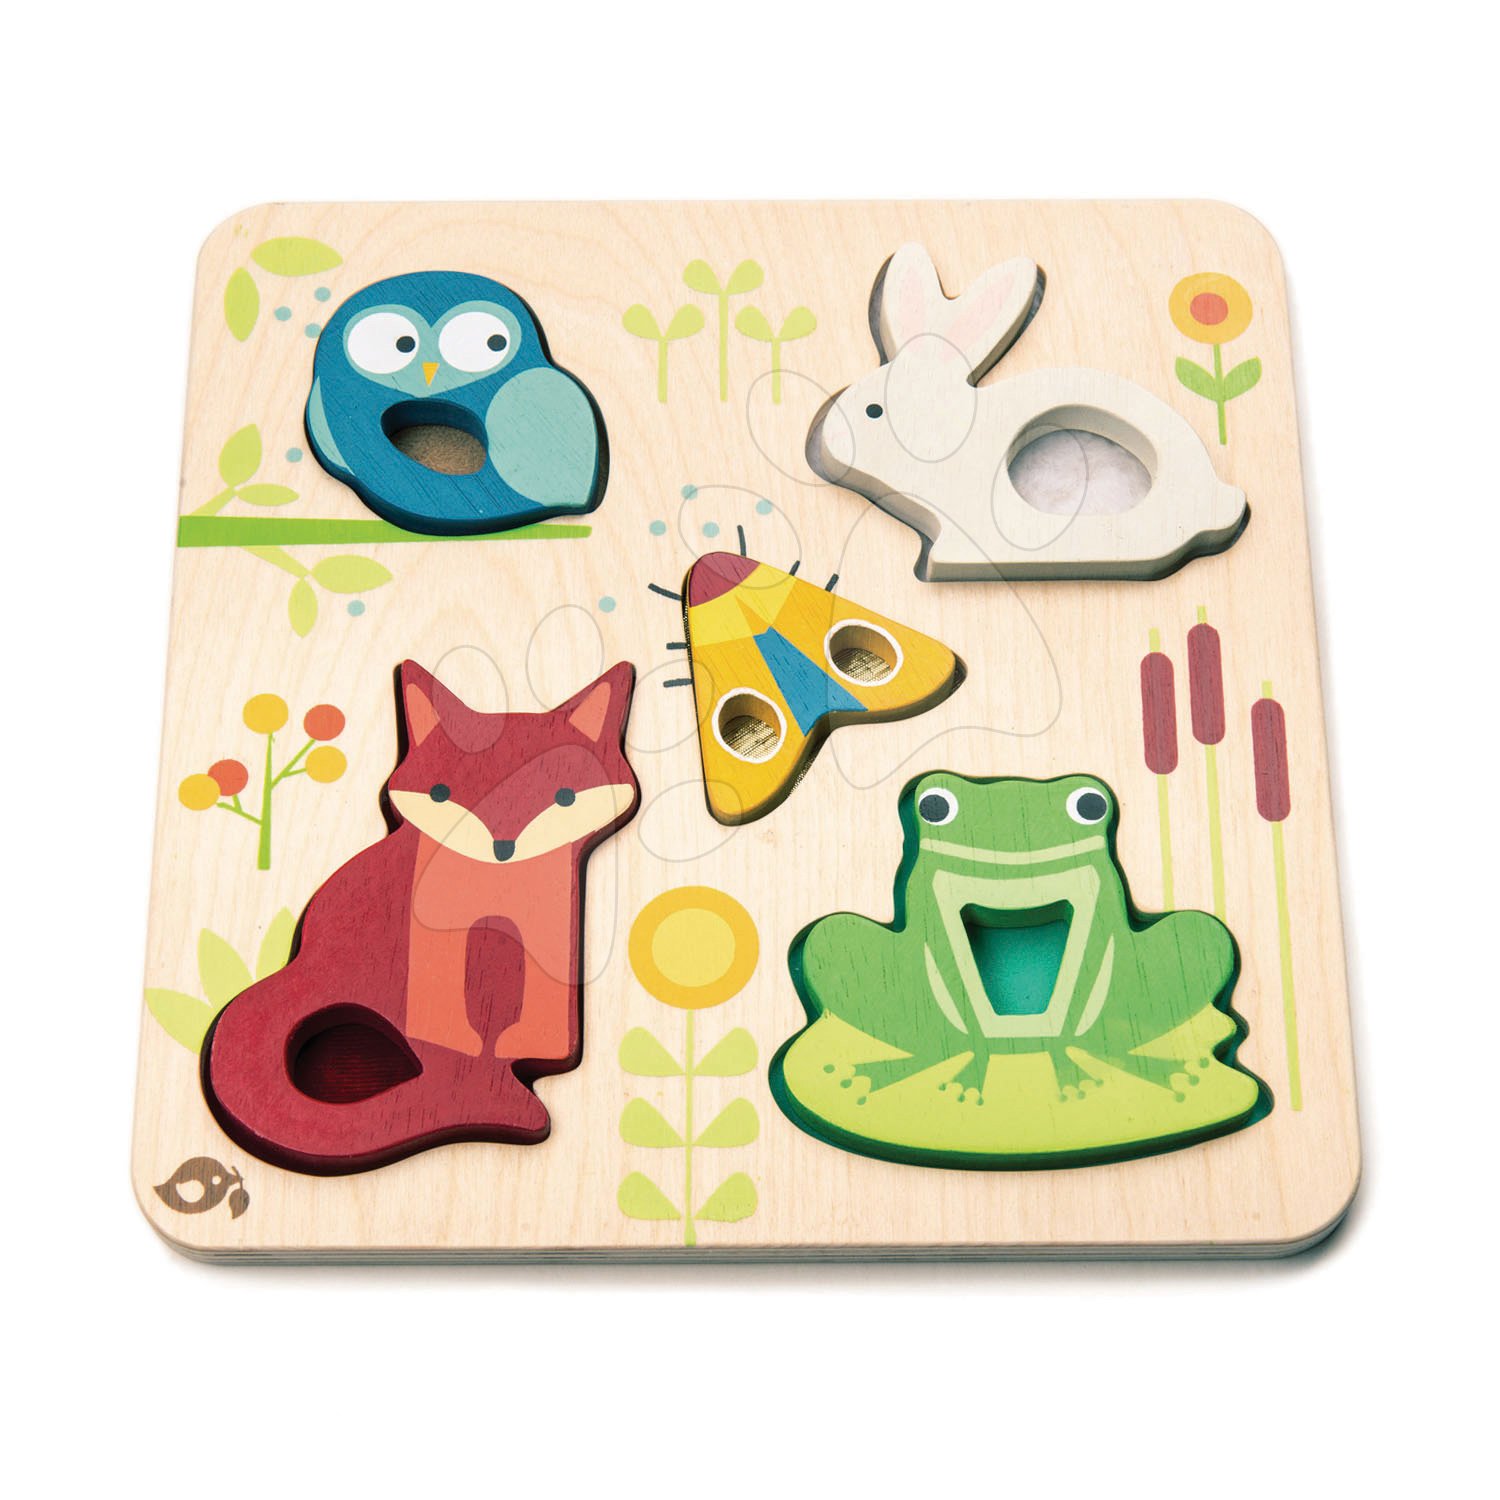 Fa erdei állatok Touchy Feely Animals Tender Leaf Toys 5 ergonomikus alakzat a táblán 18 hó-tól